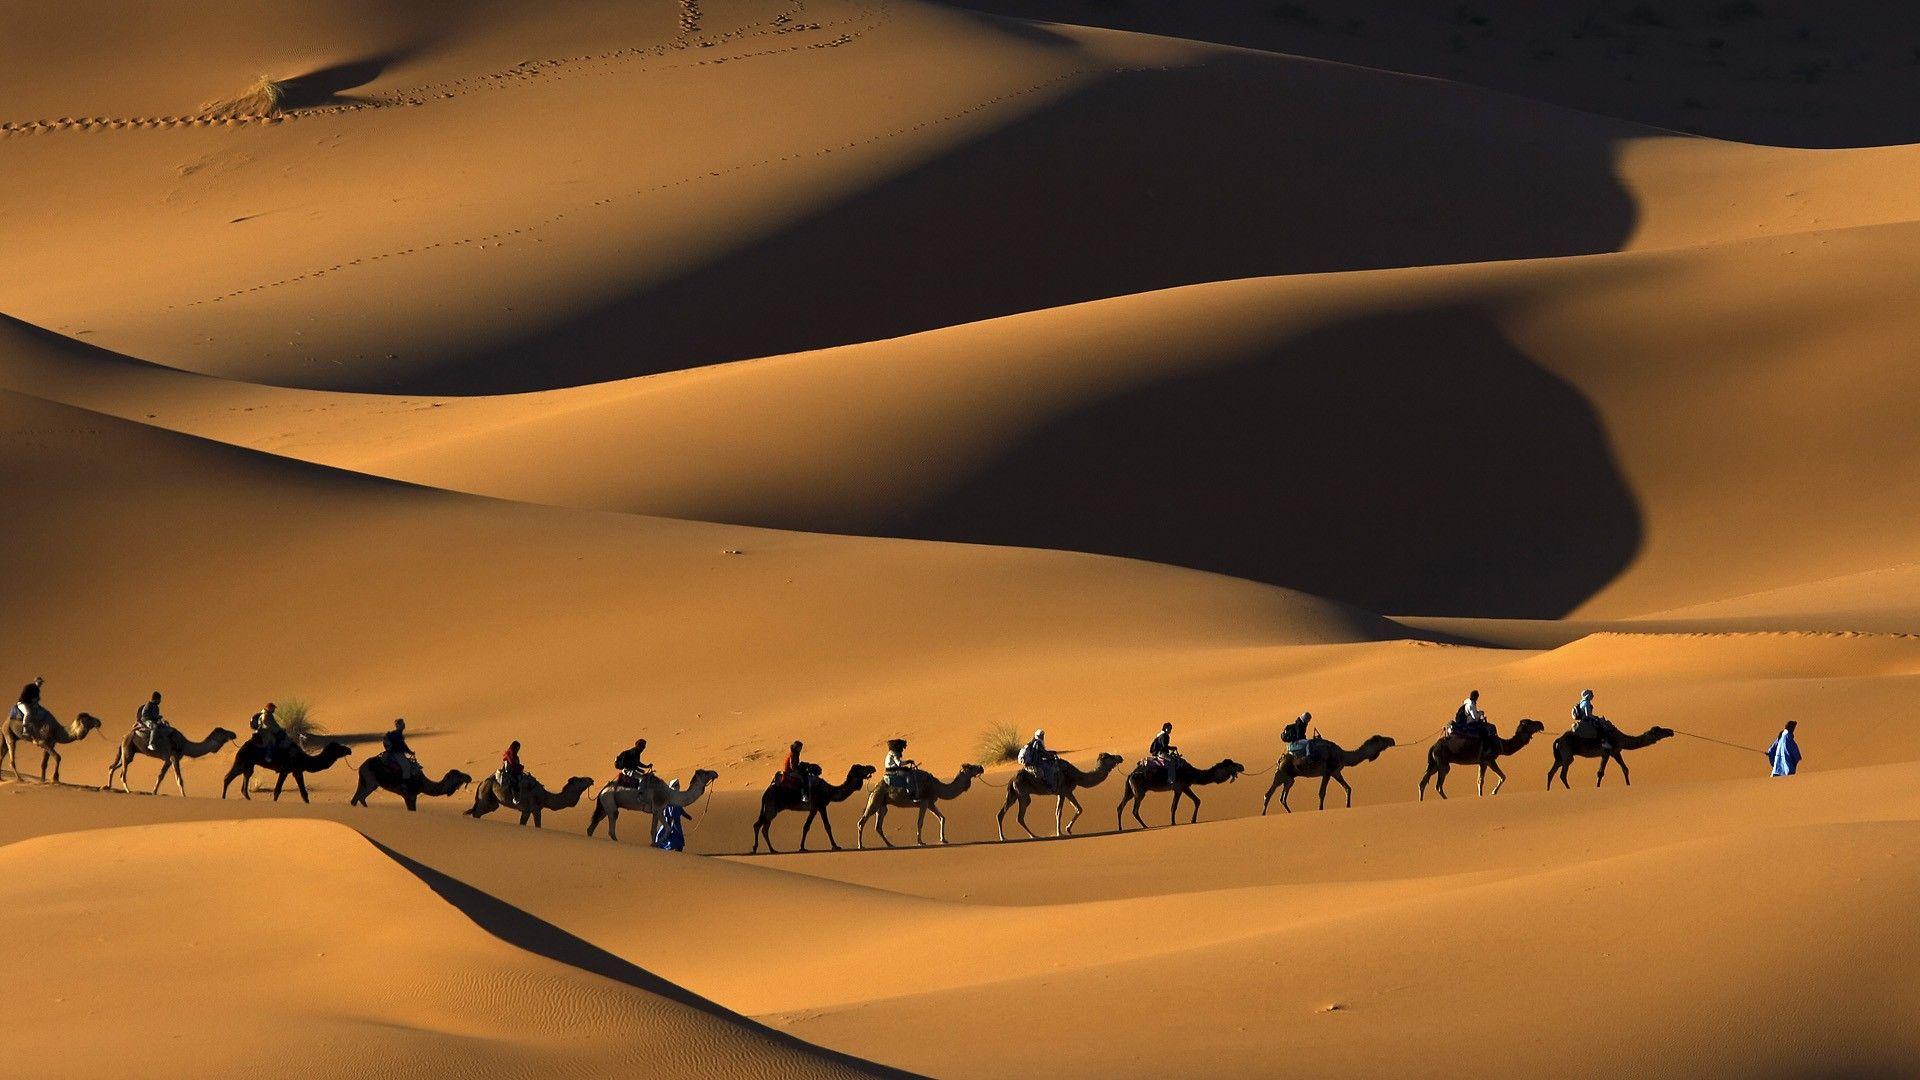 Sahara Desert Wallpaper